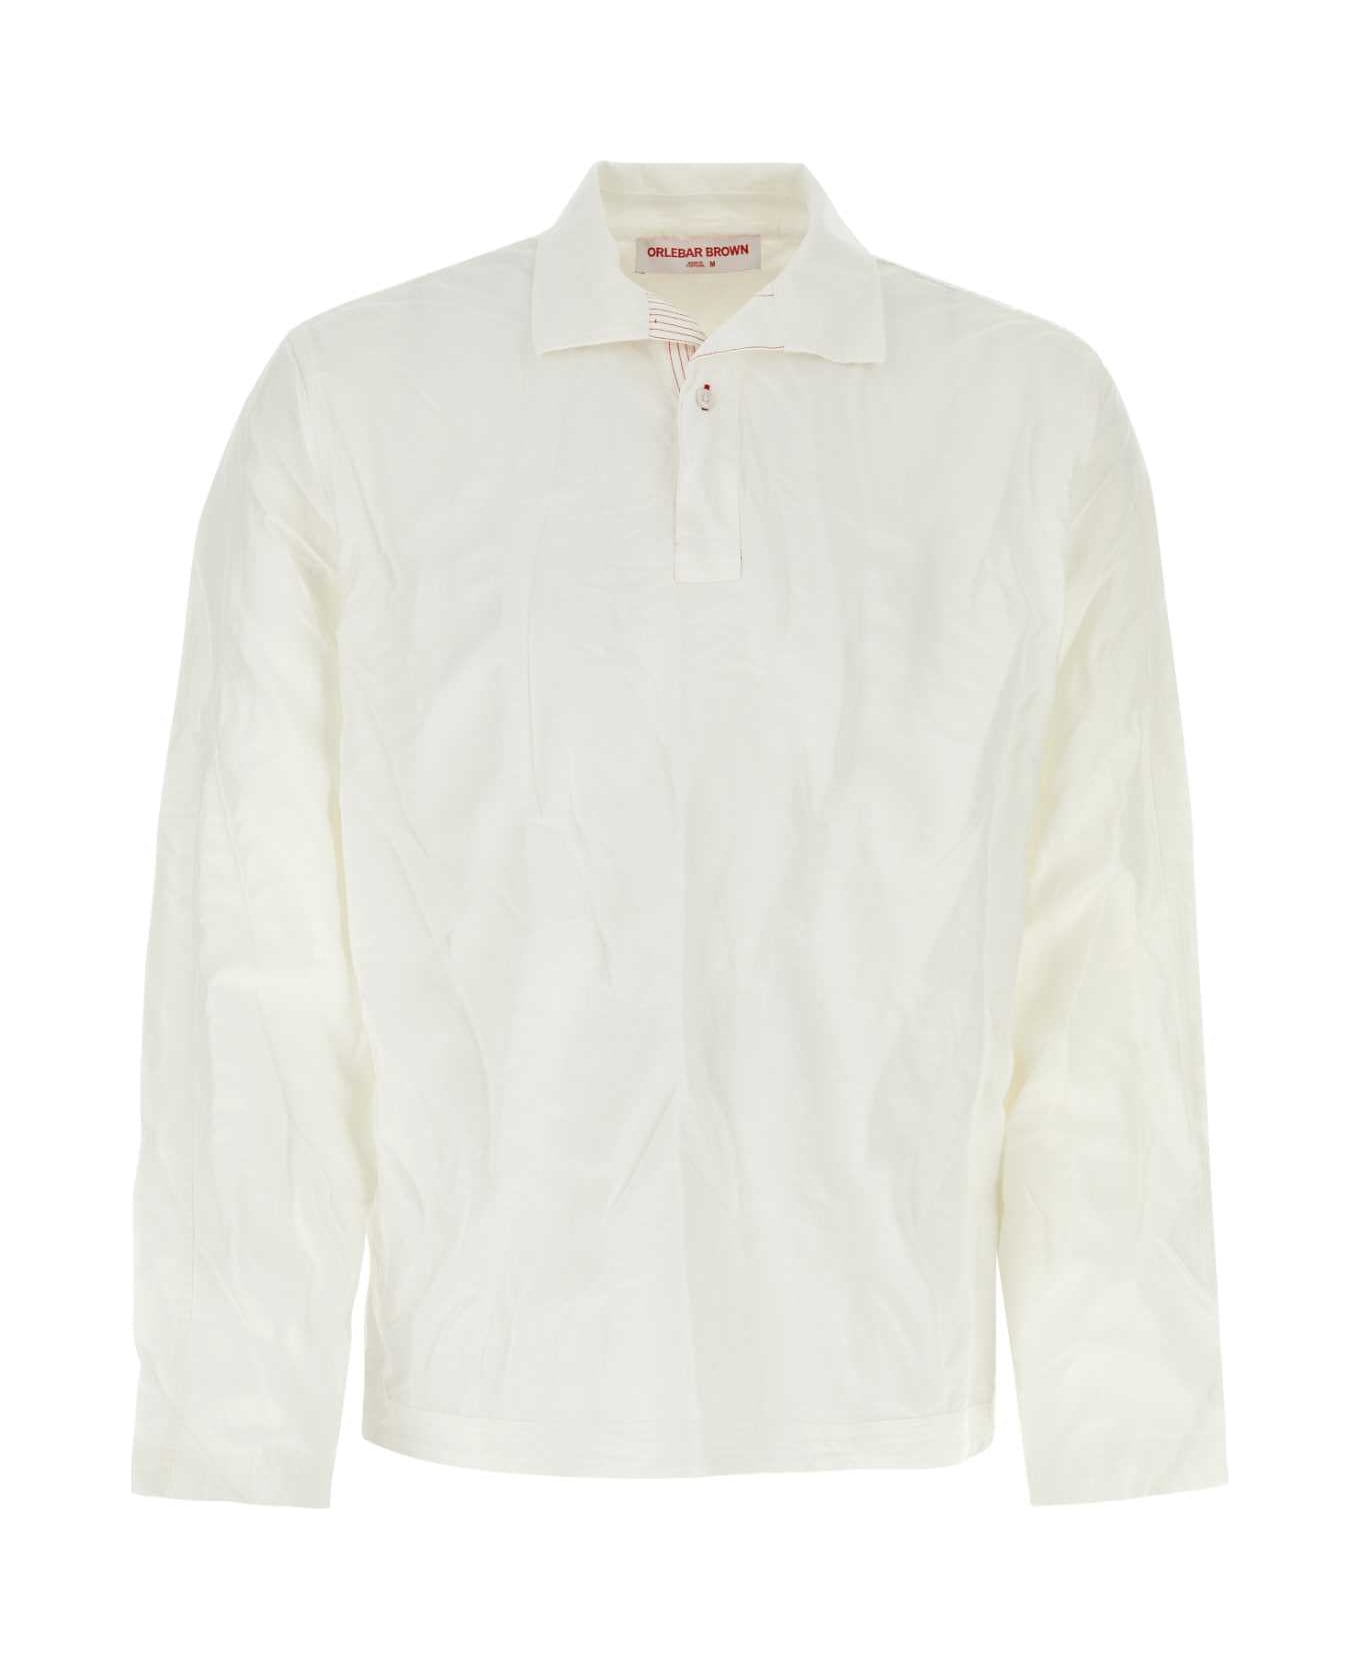 Orlebar Brown White Cotton Blend Roland Shirt - SEAMIST シャツ